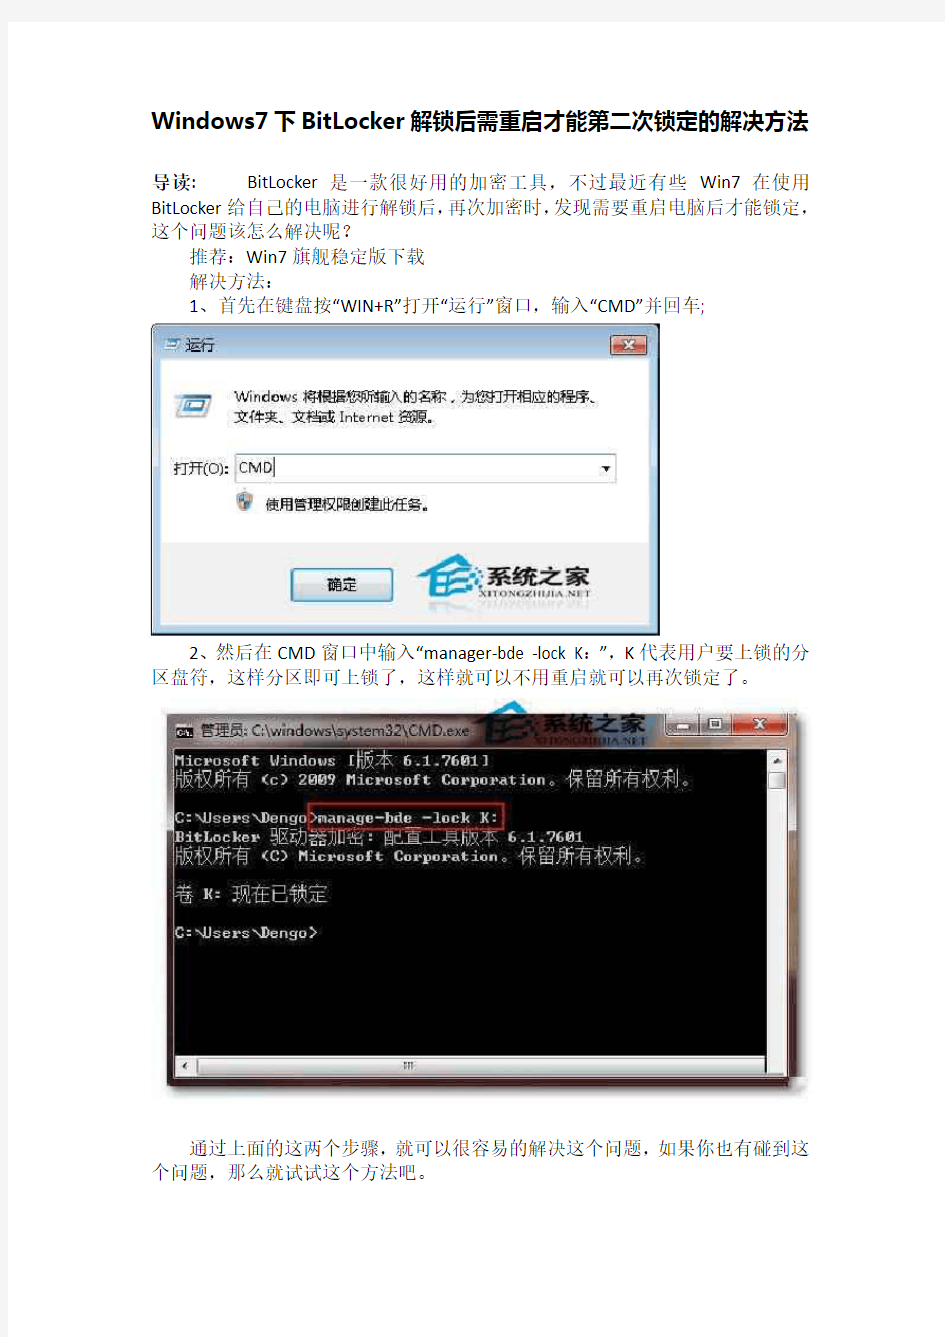 Windows7下BitLocker解锁后需重启才能第二次锁定的解决方法